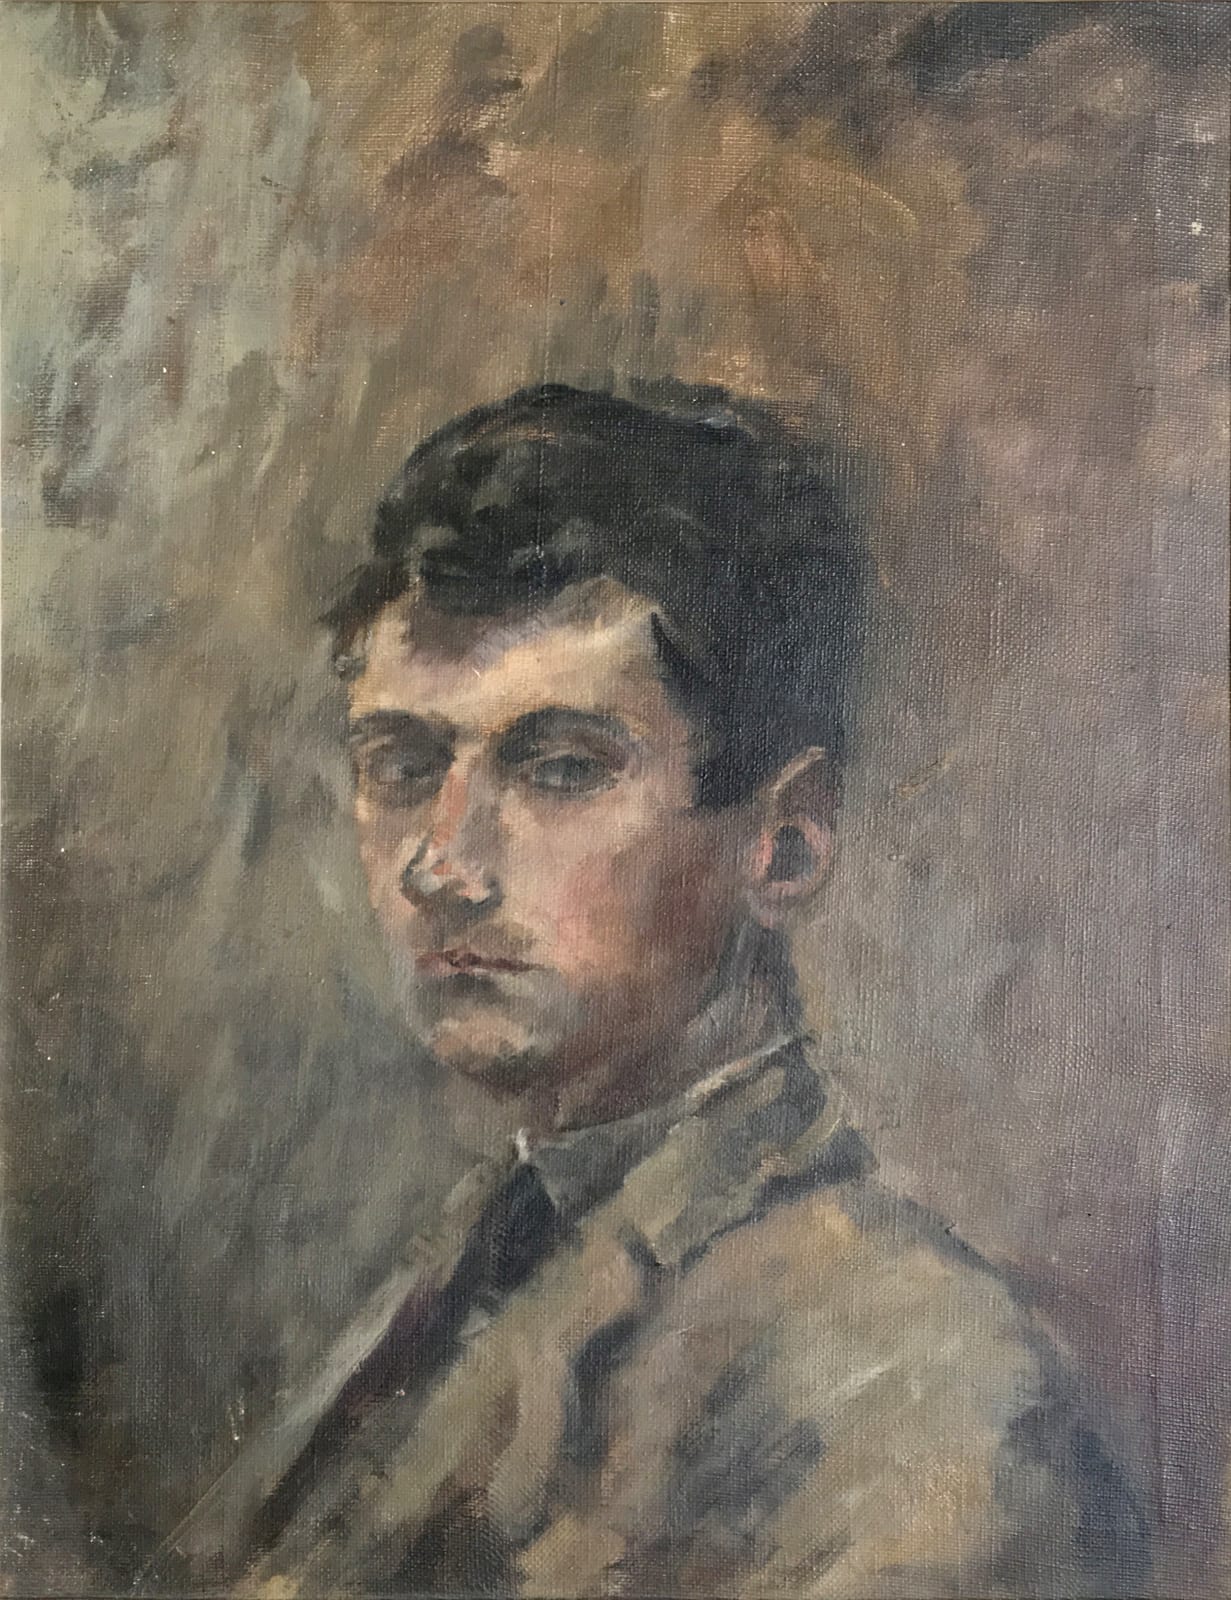 ANTHONY EYTON, Self Portrait, 1941